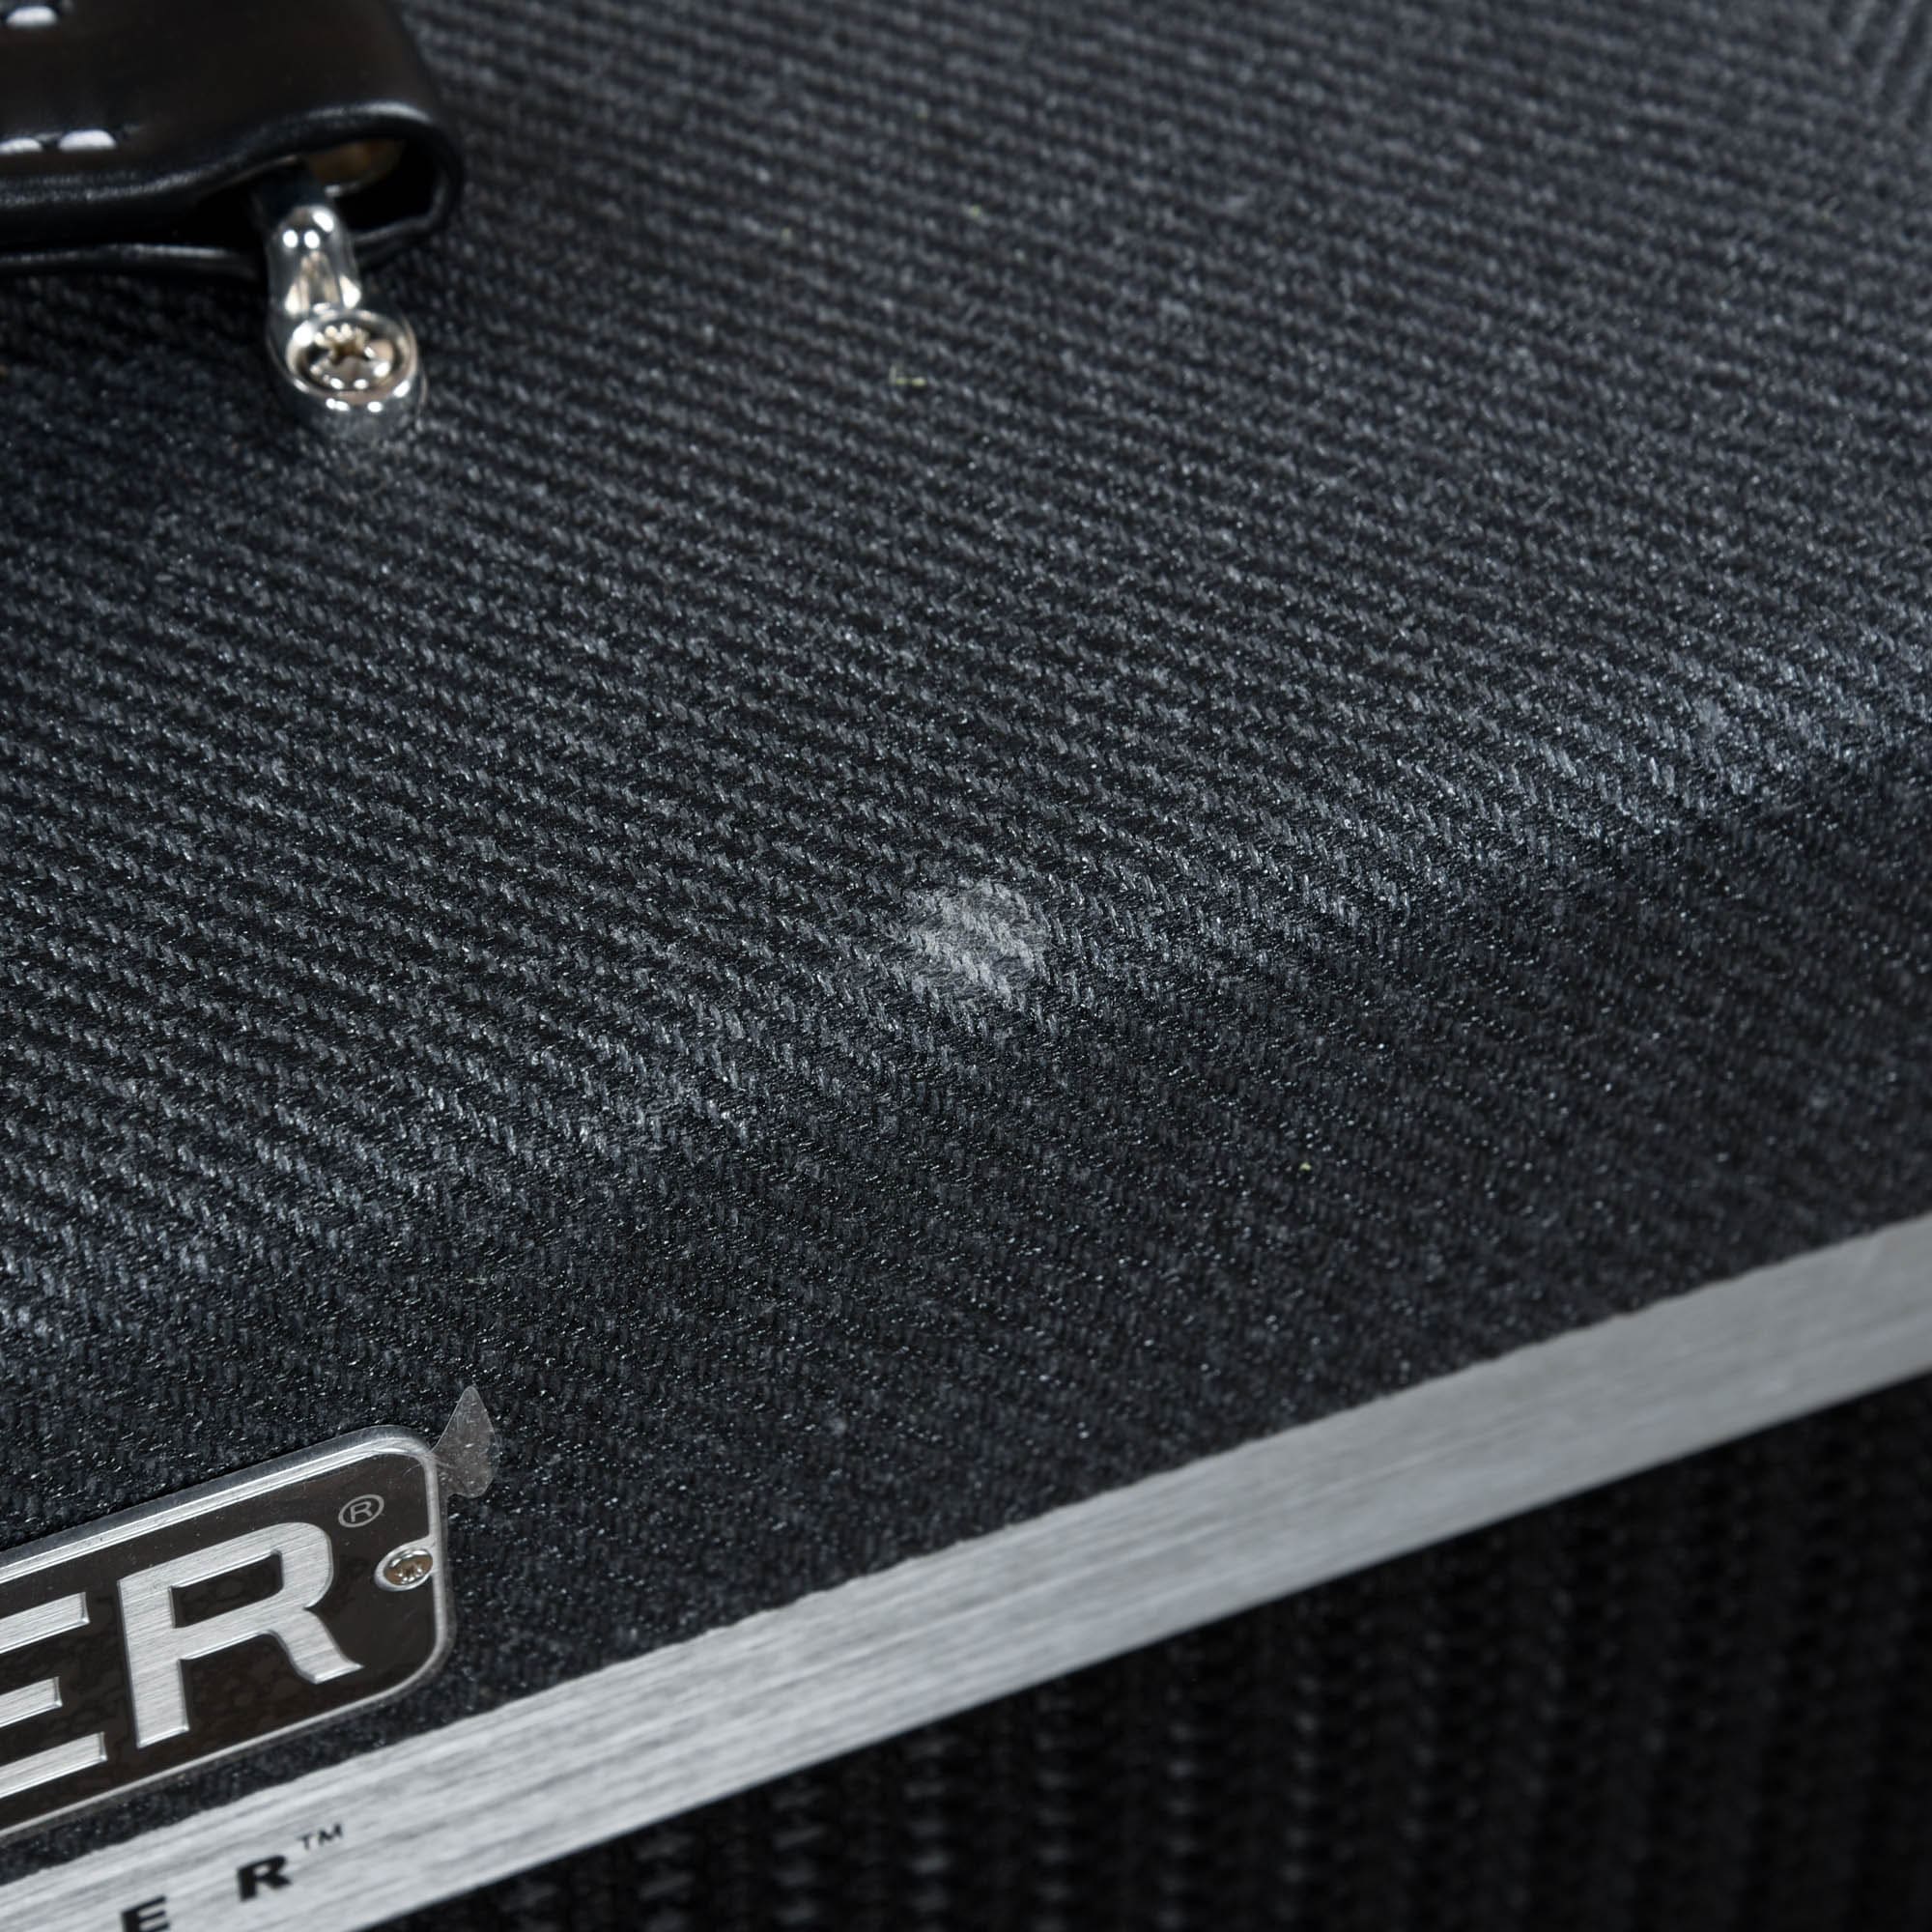 Fender Bassbreaker 112 Cabinet Amps / Guitar Cabinets